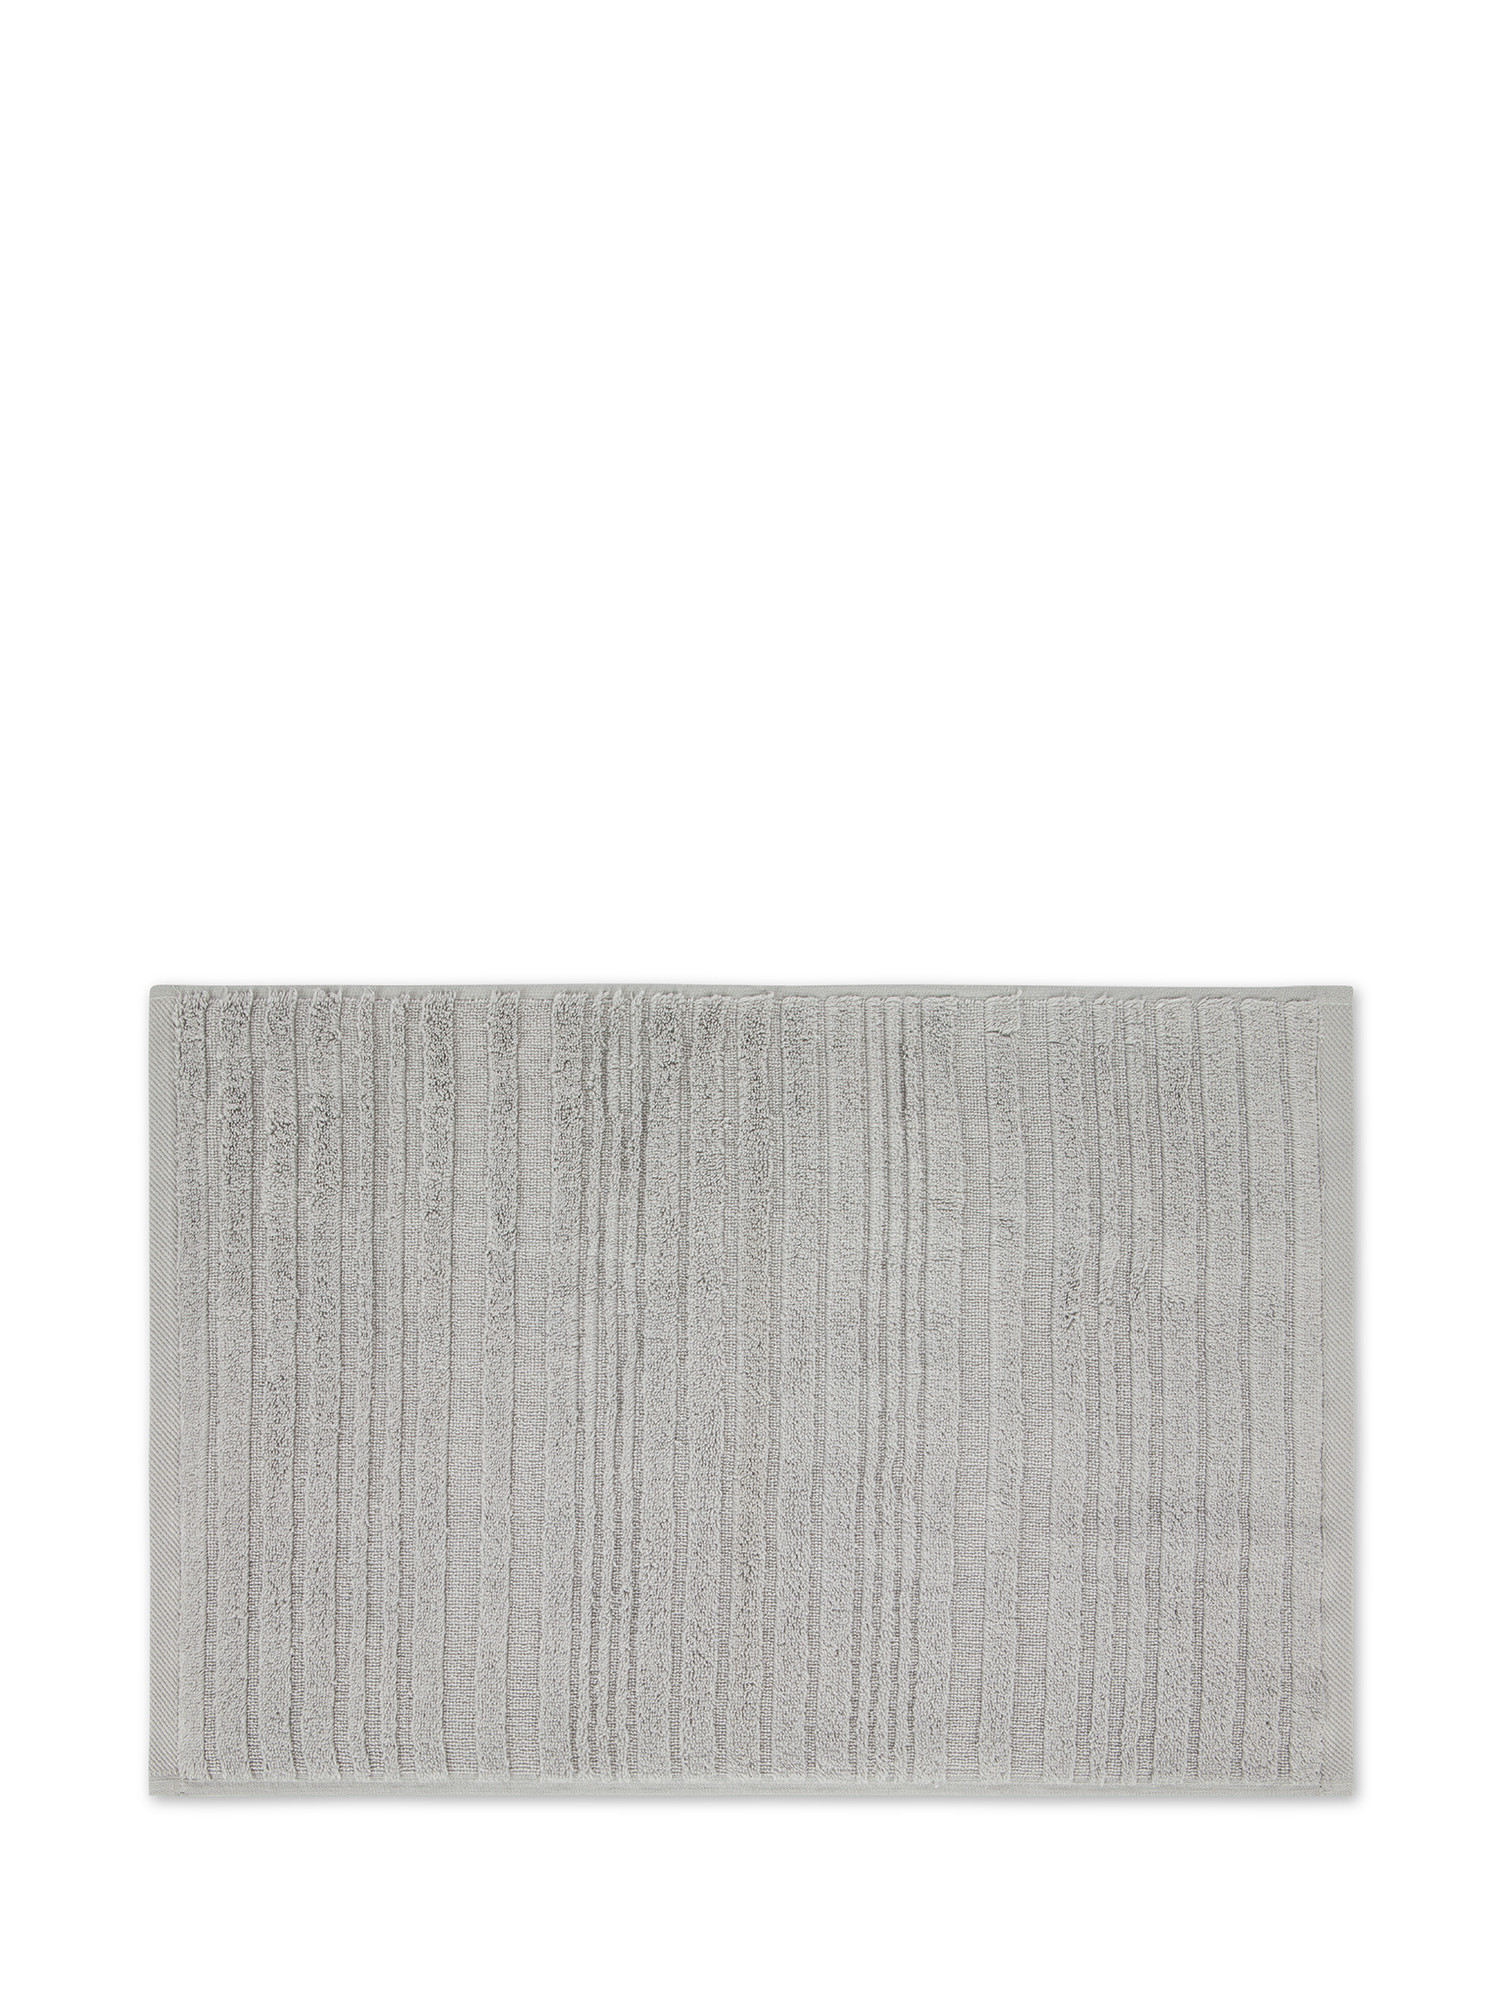 Asciugamano in spugna di cotone con righe a rilievo, Grigio, large image number 1